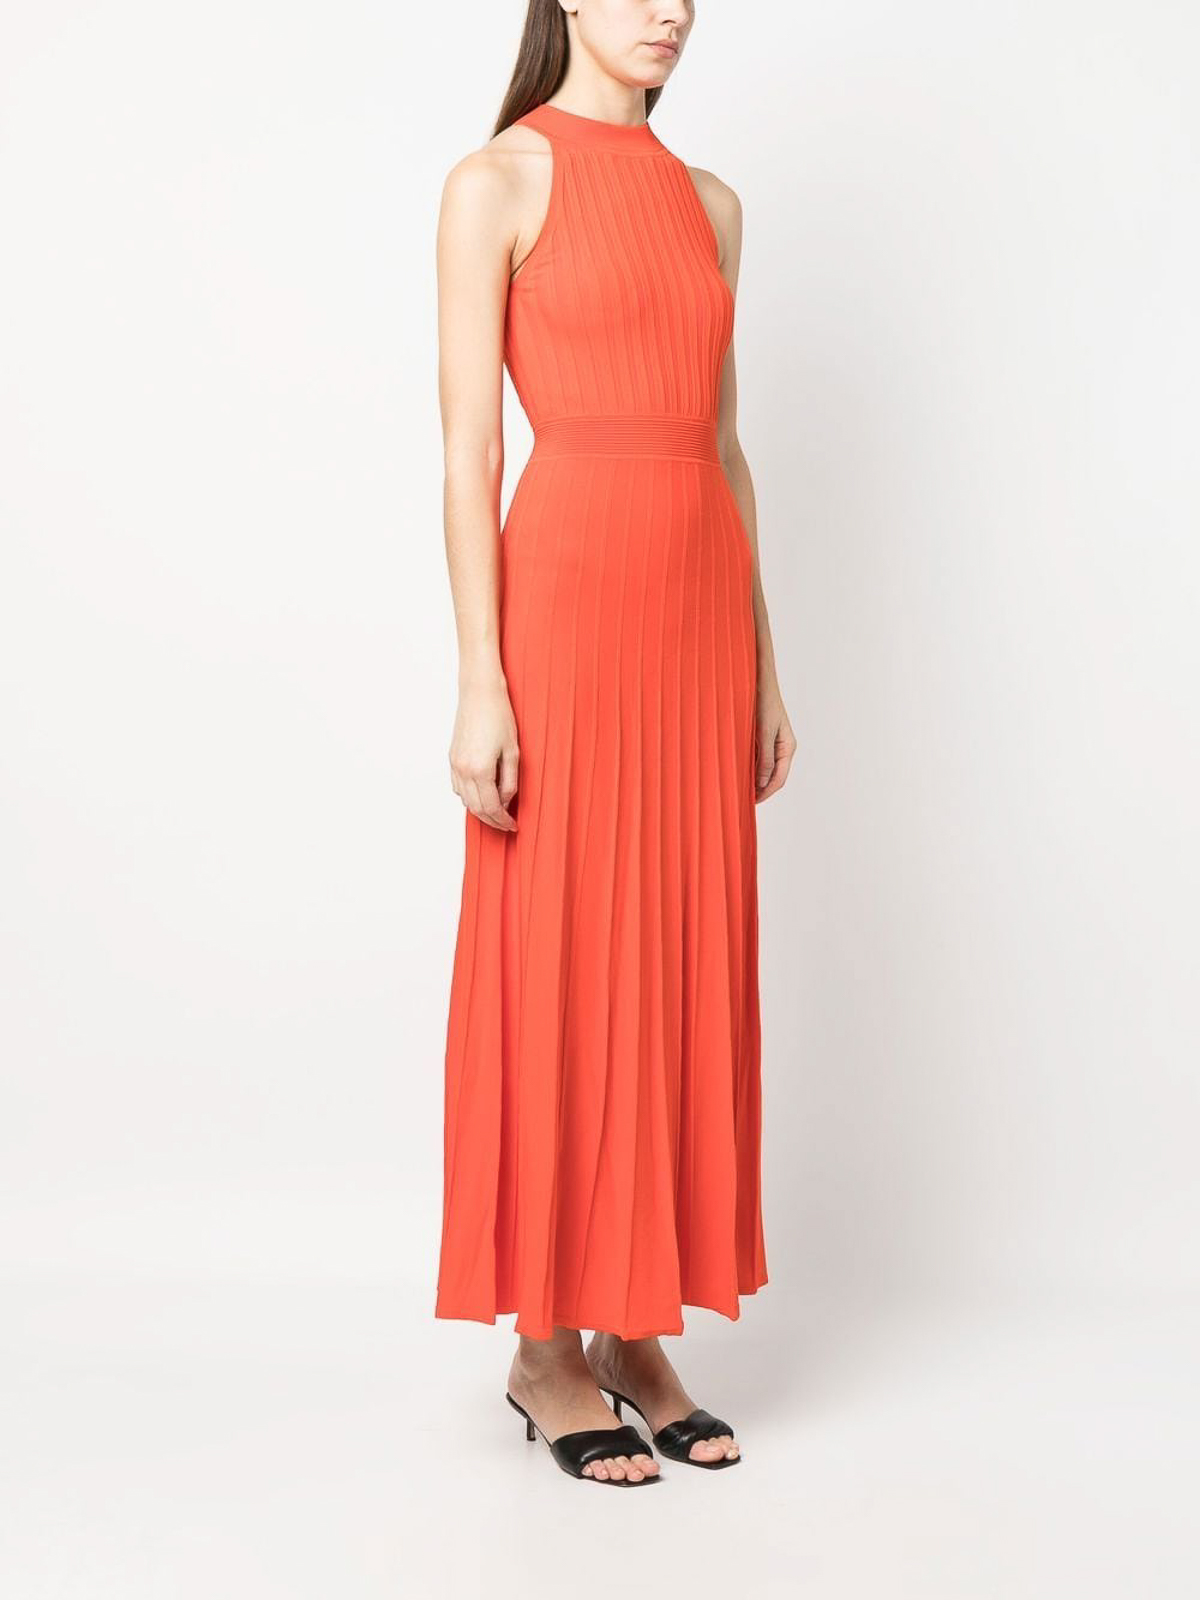 Shop Michael Kors Sleeveless Knitted Long Dress In Orange